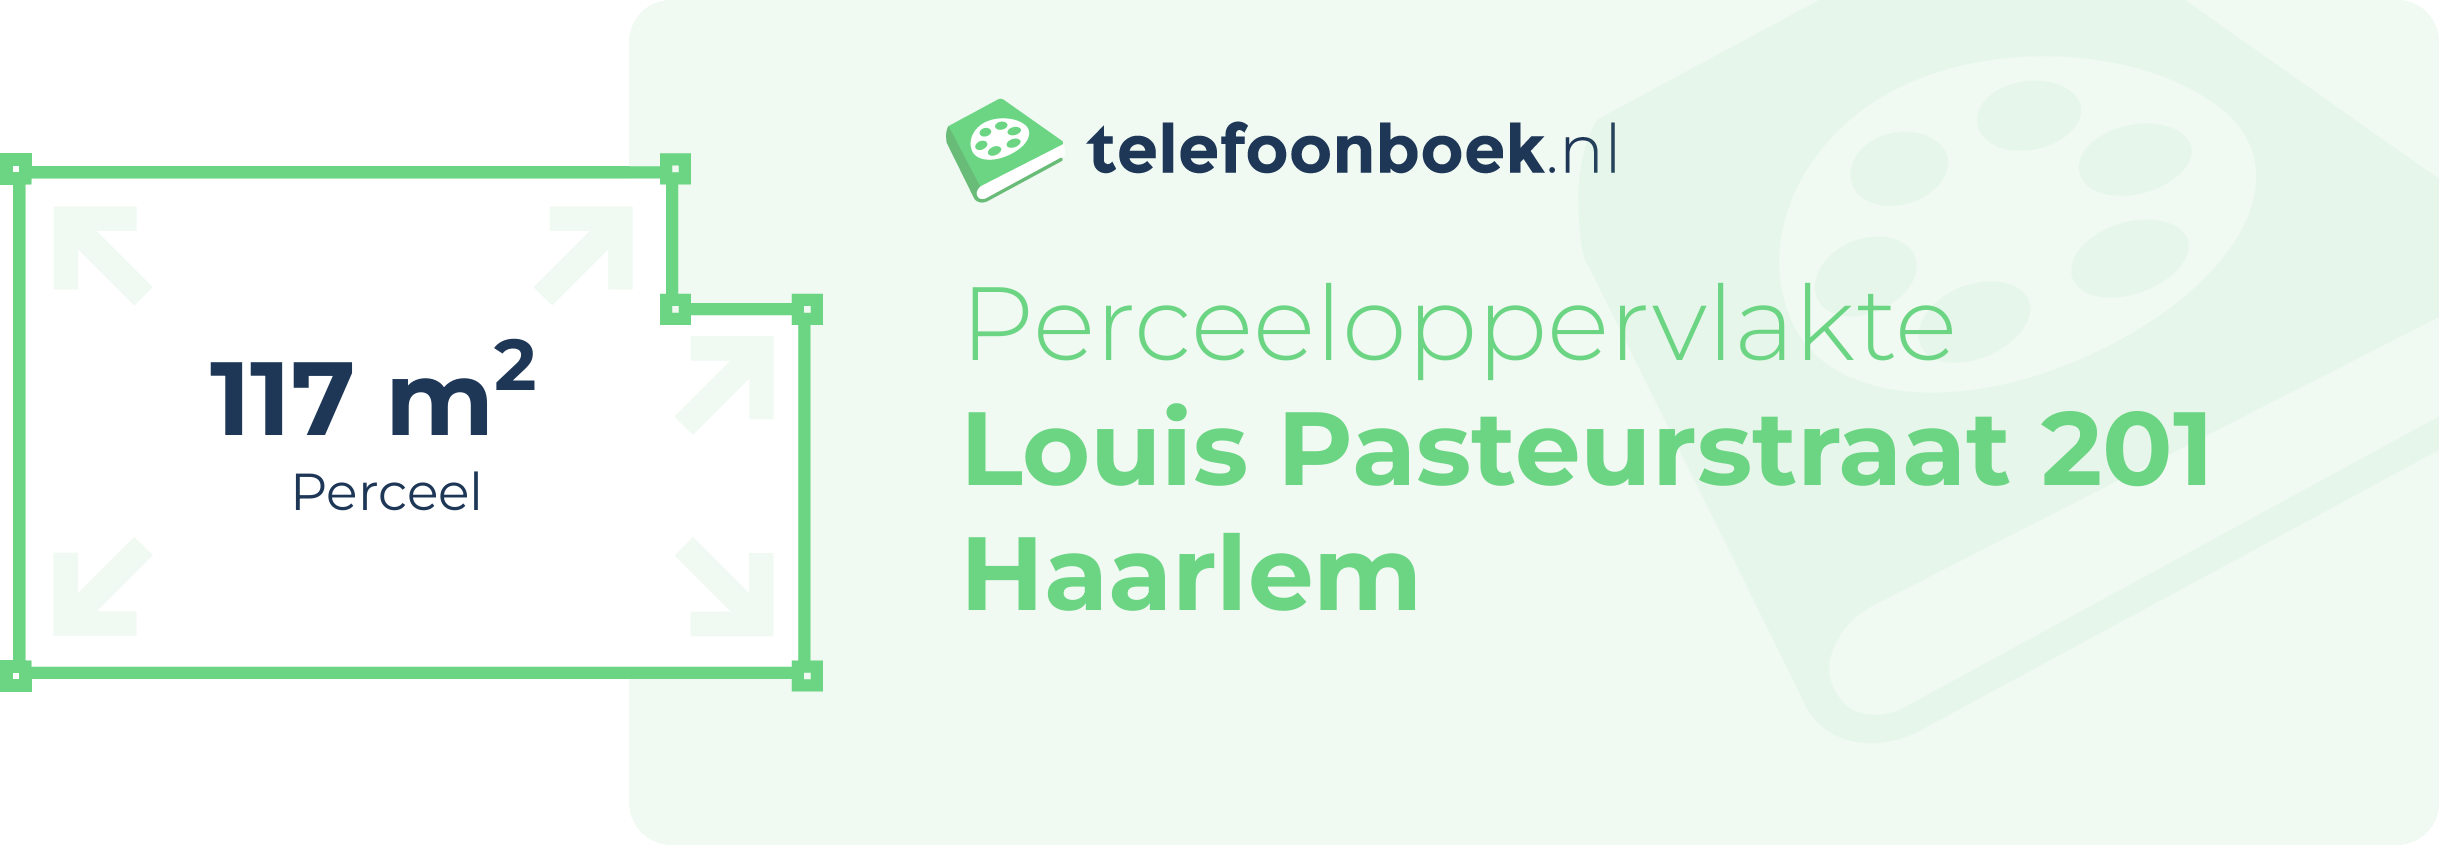 Perceeloppervlakte Louis Pasteurstraat 201 Haarlem